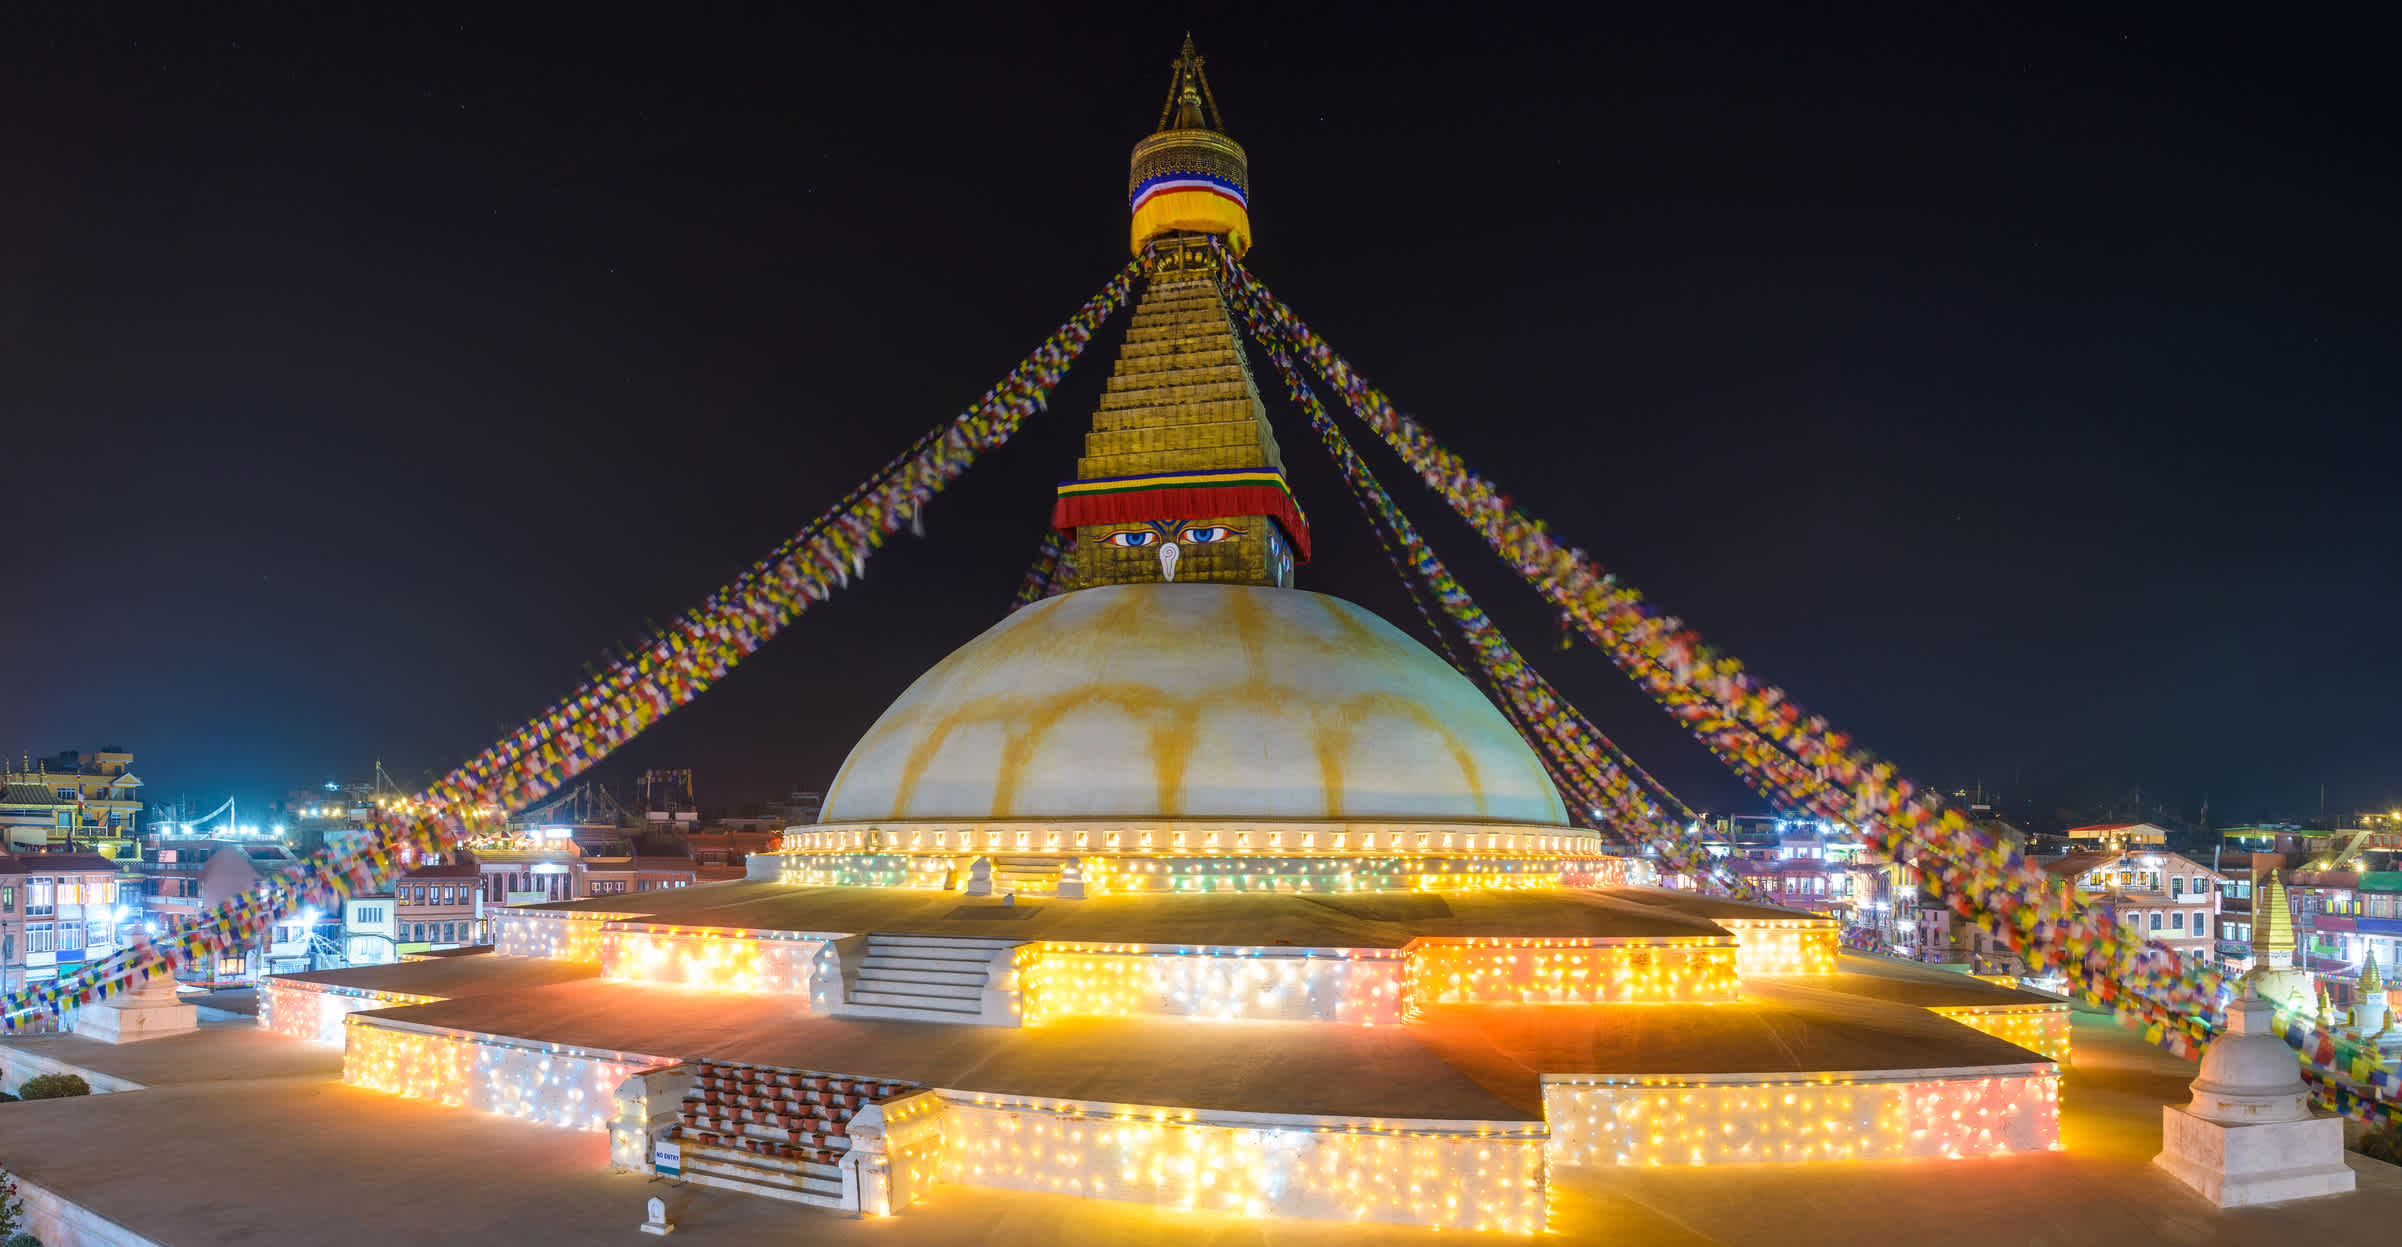  Losar - Neujahrsfest in Nepal, das Sie bei einer Nepal Reise erleben können